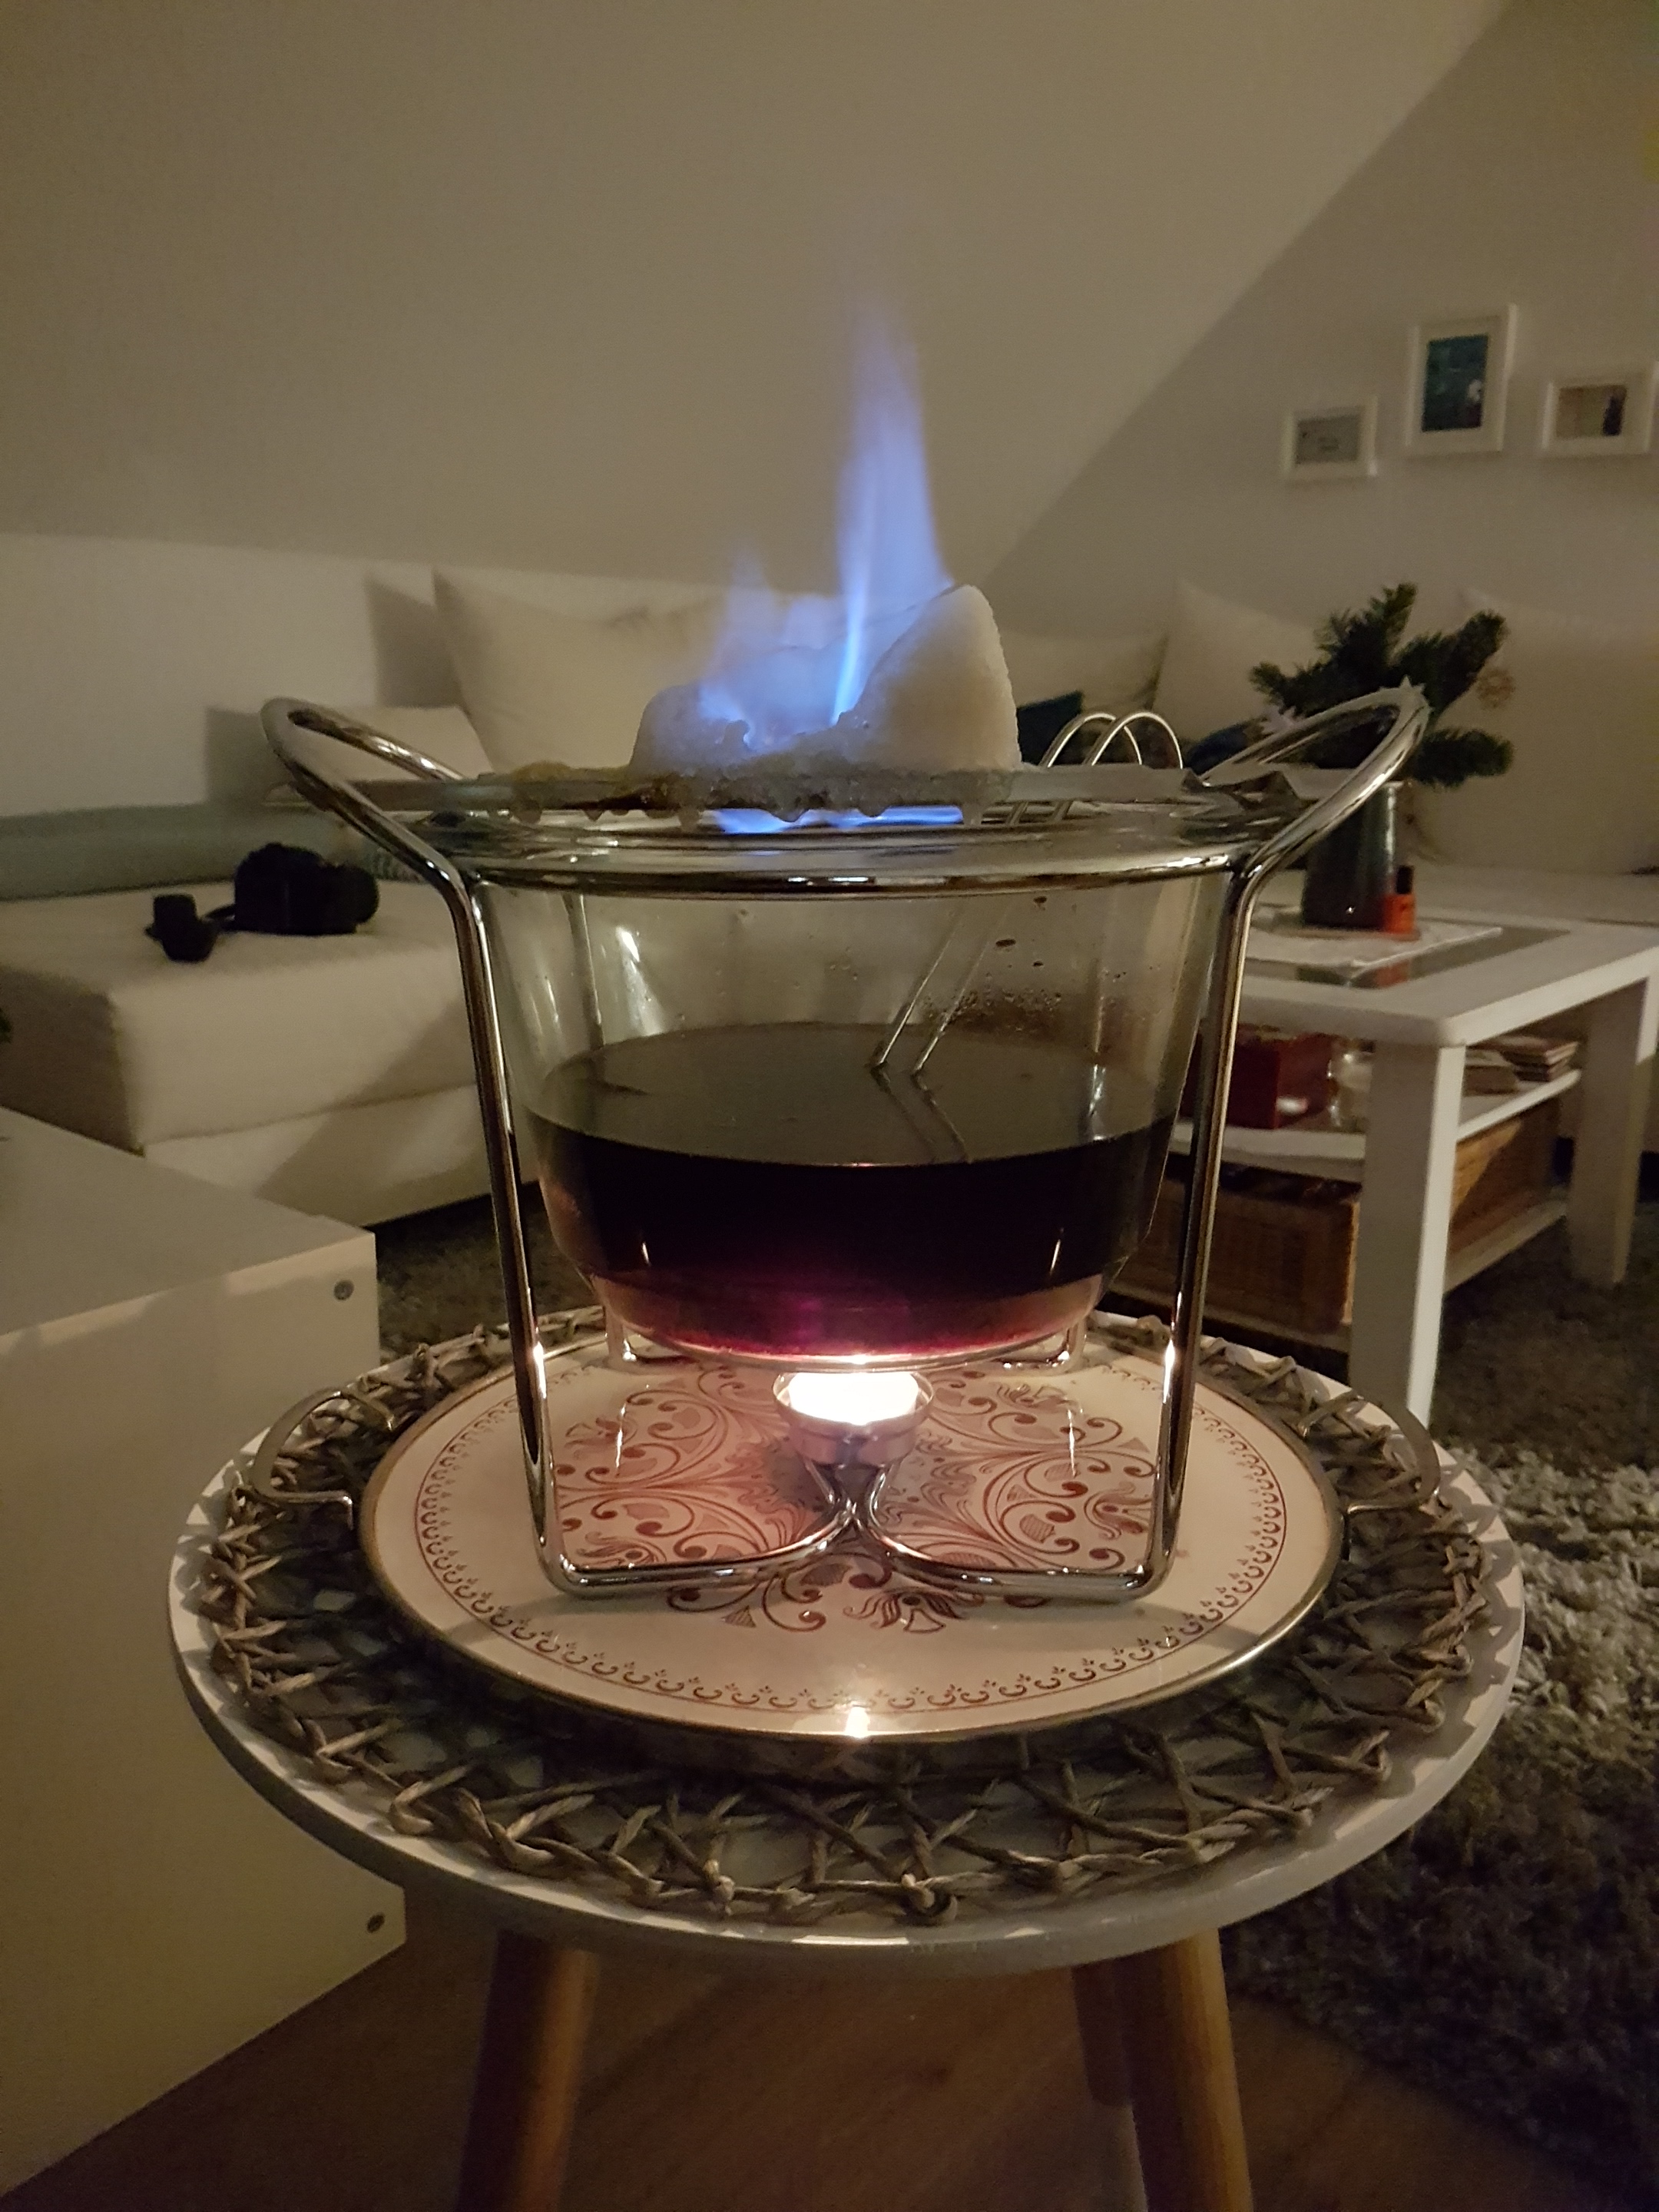 Feuerzangenbowle | cookthebooth